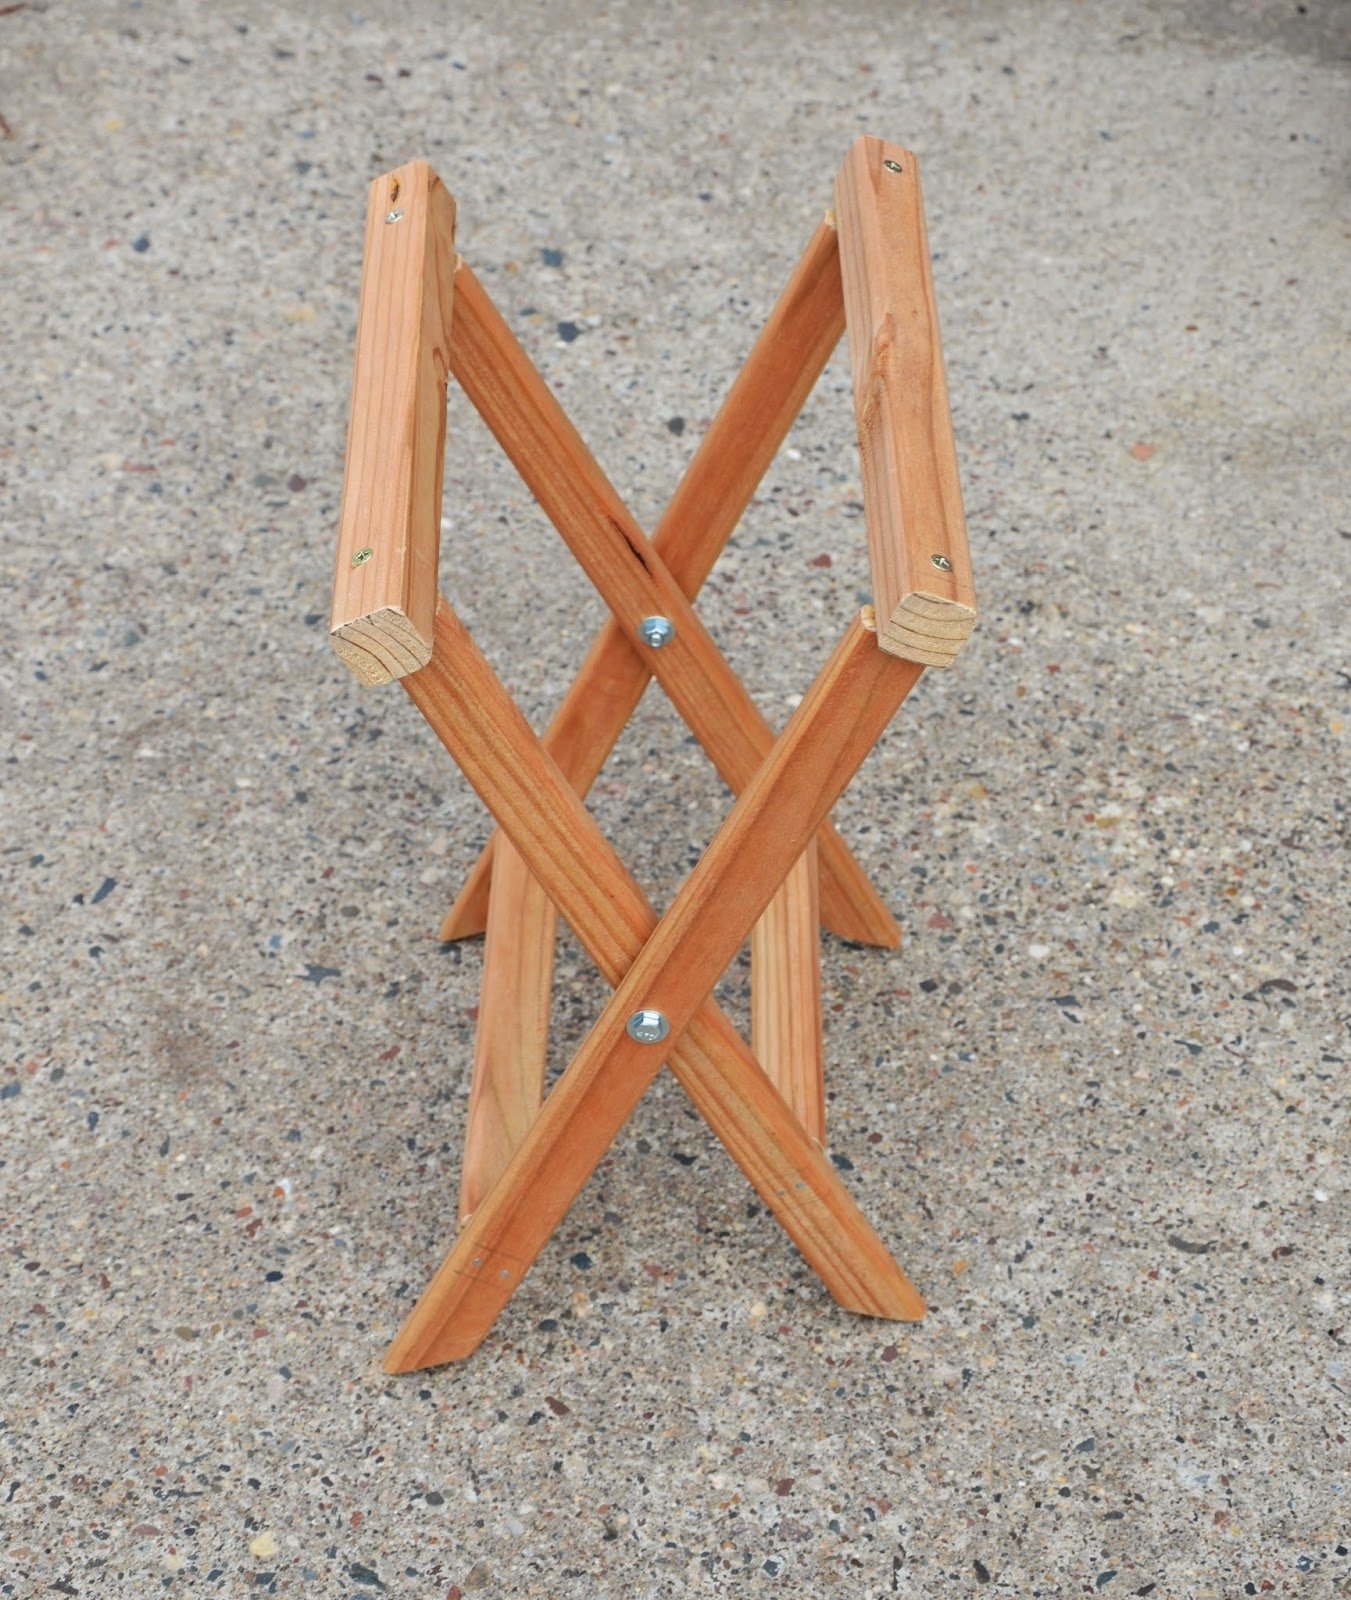 Раскладной стульчик. Самодельный складной табурет. Складной стульчик из дерева. Самодельный раскладной стул. Складной стул своими руками из дерева